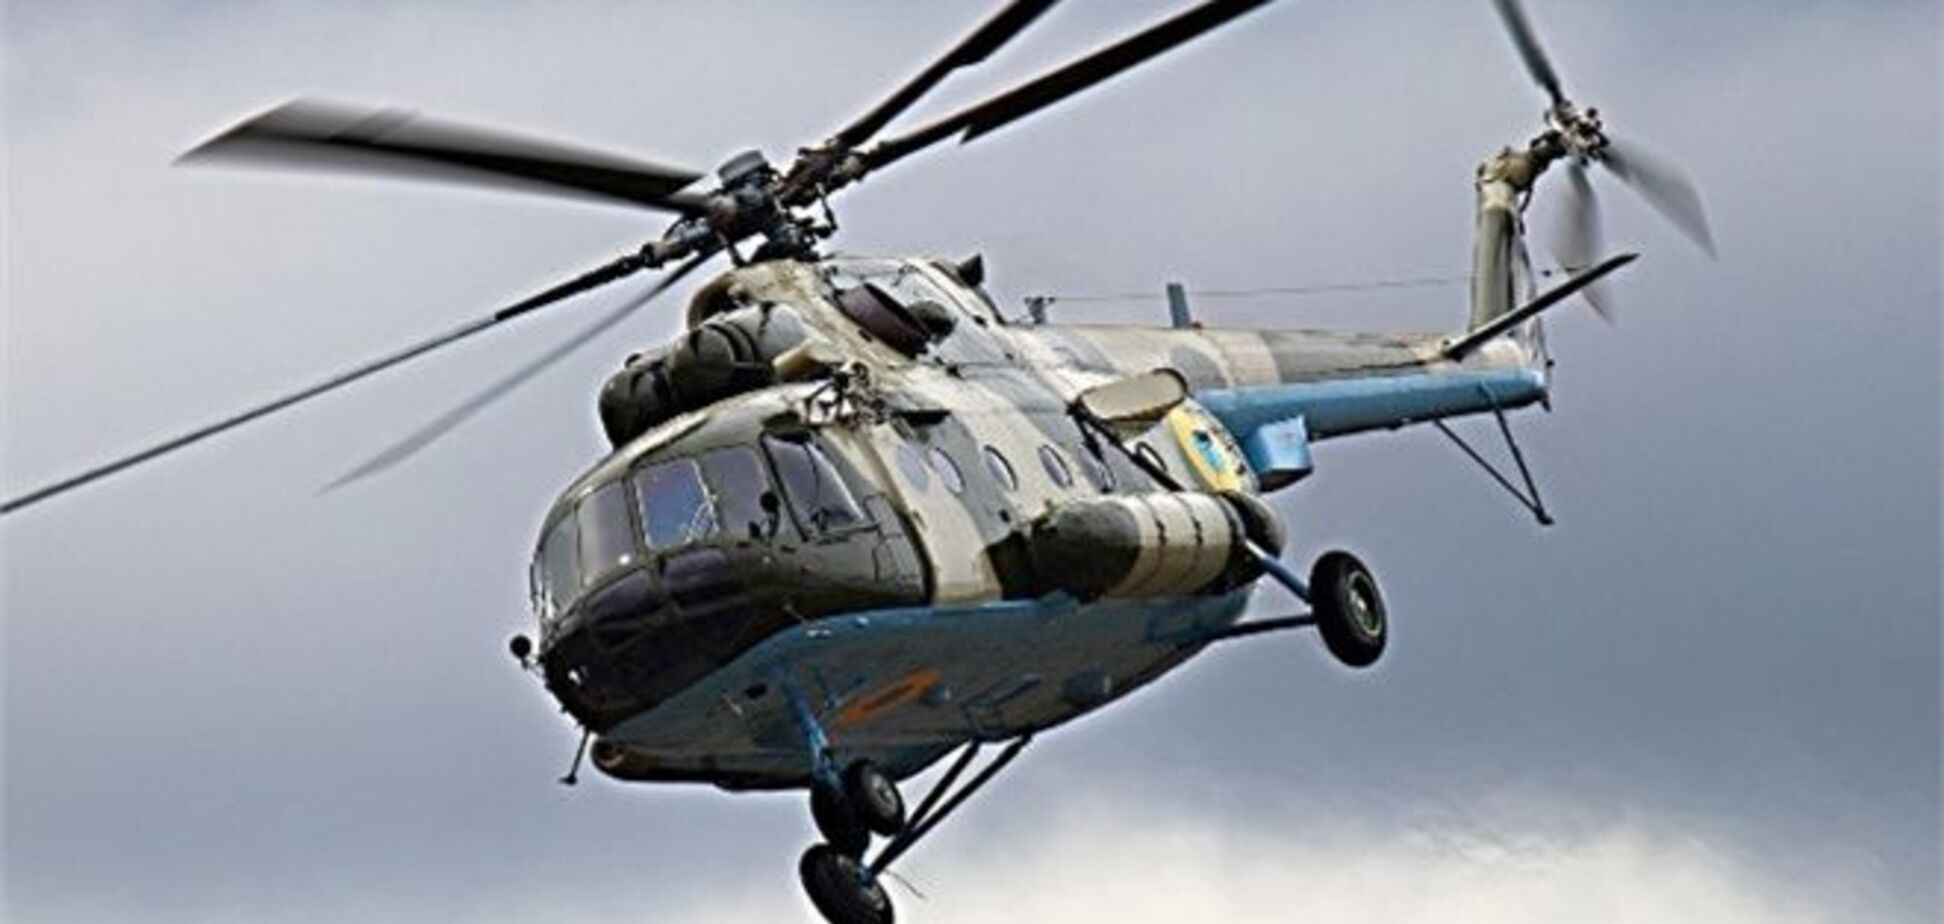 Захоплені в Судані українські пілоти звільнені - МЗС